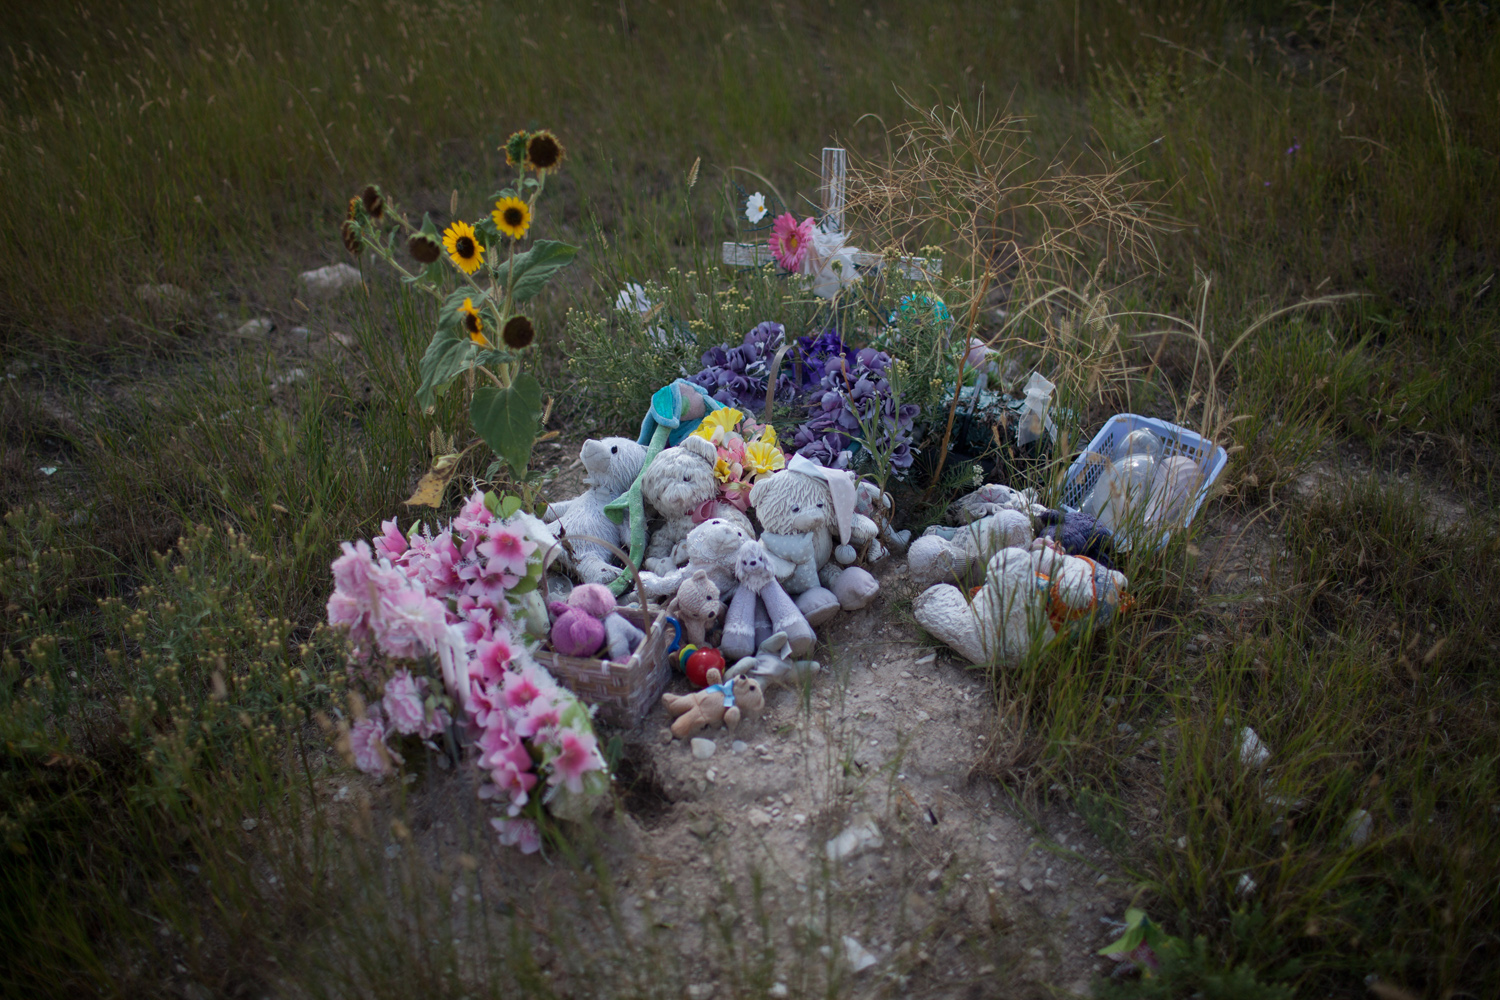 A child's grave in Pine Ridge, SD.